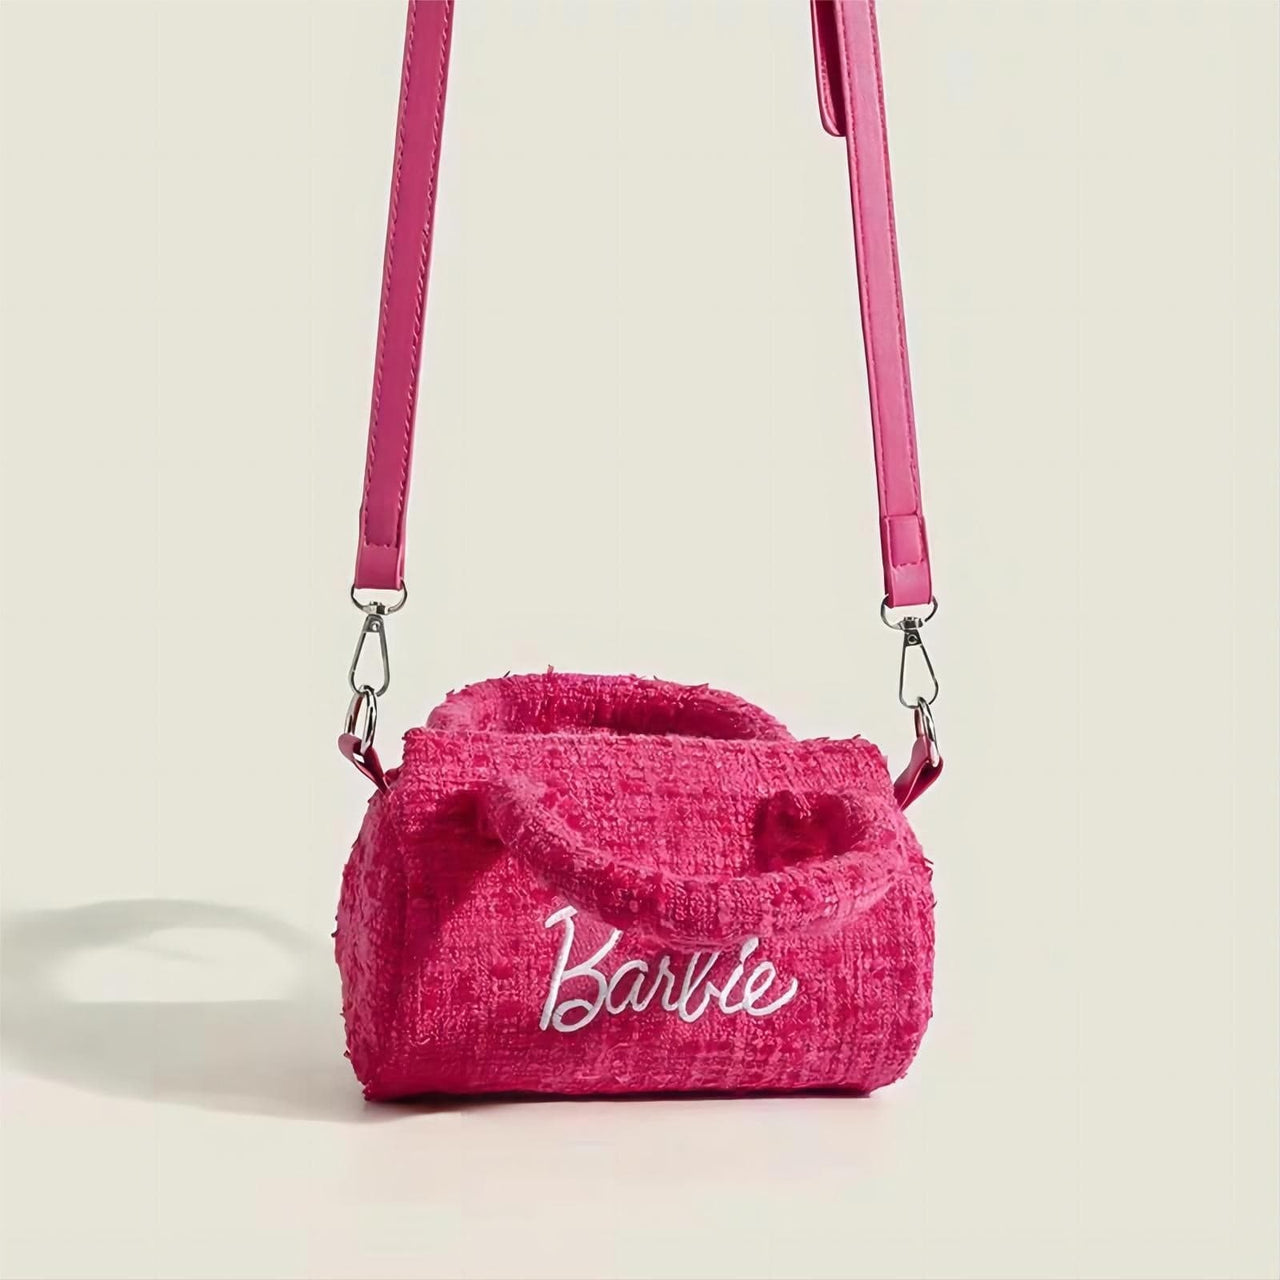 Barbie Casual Shoulder Bag - Black